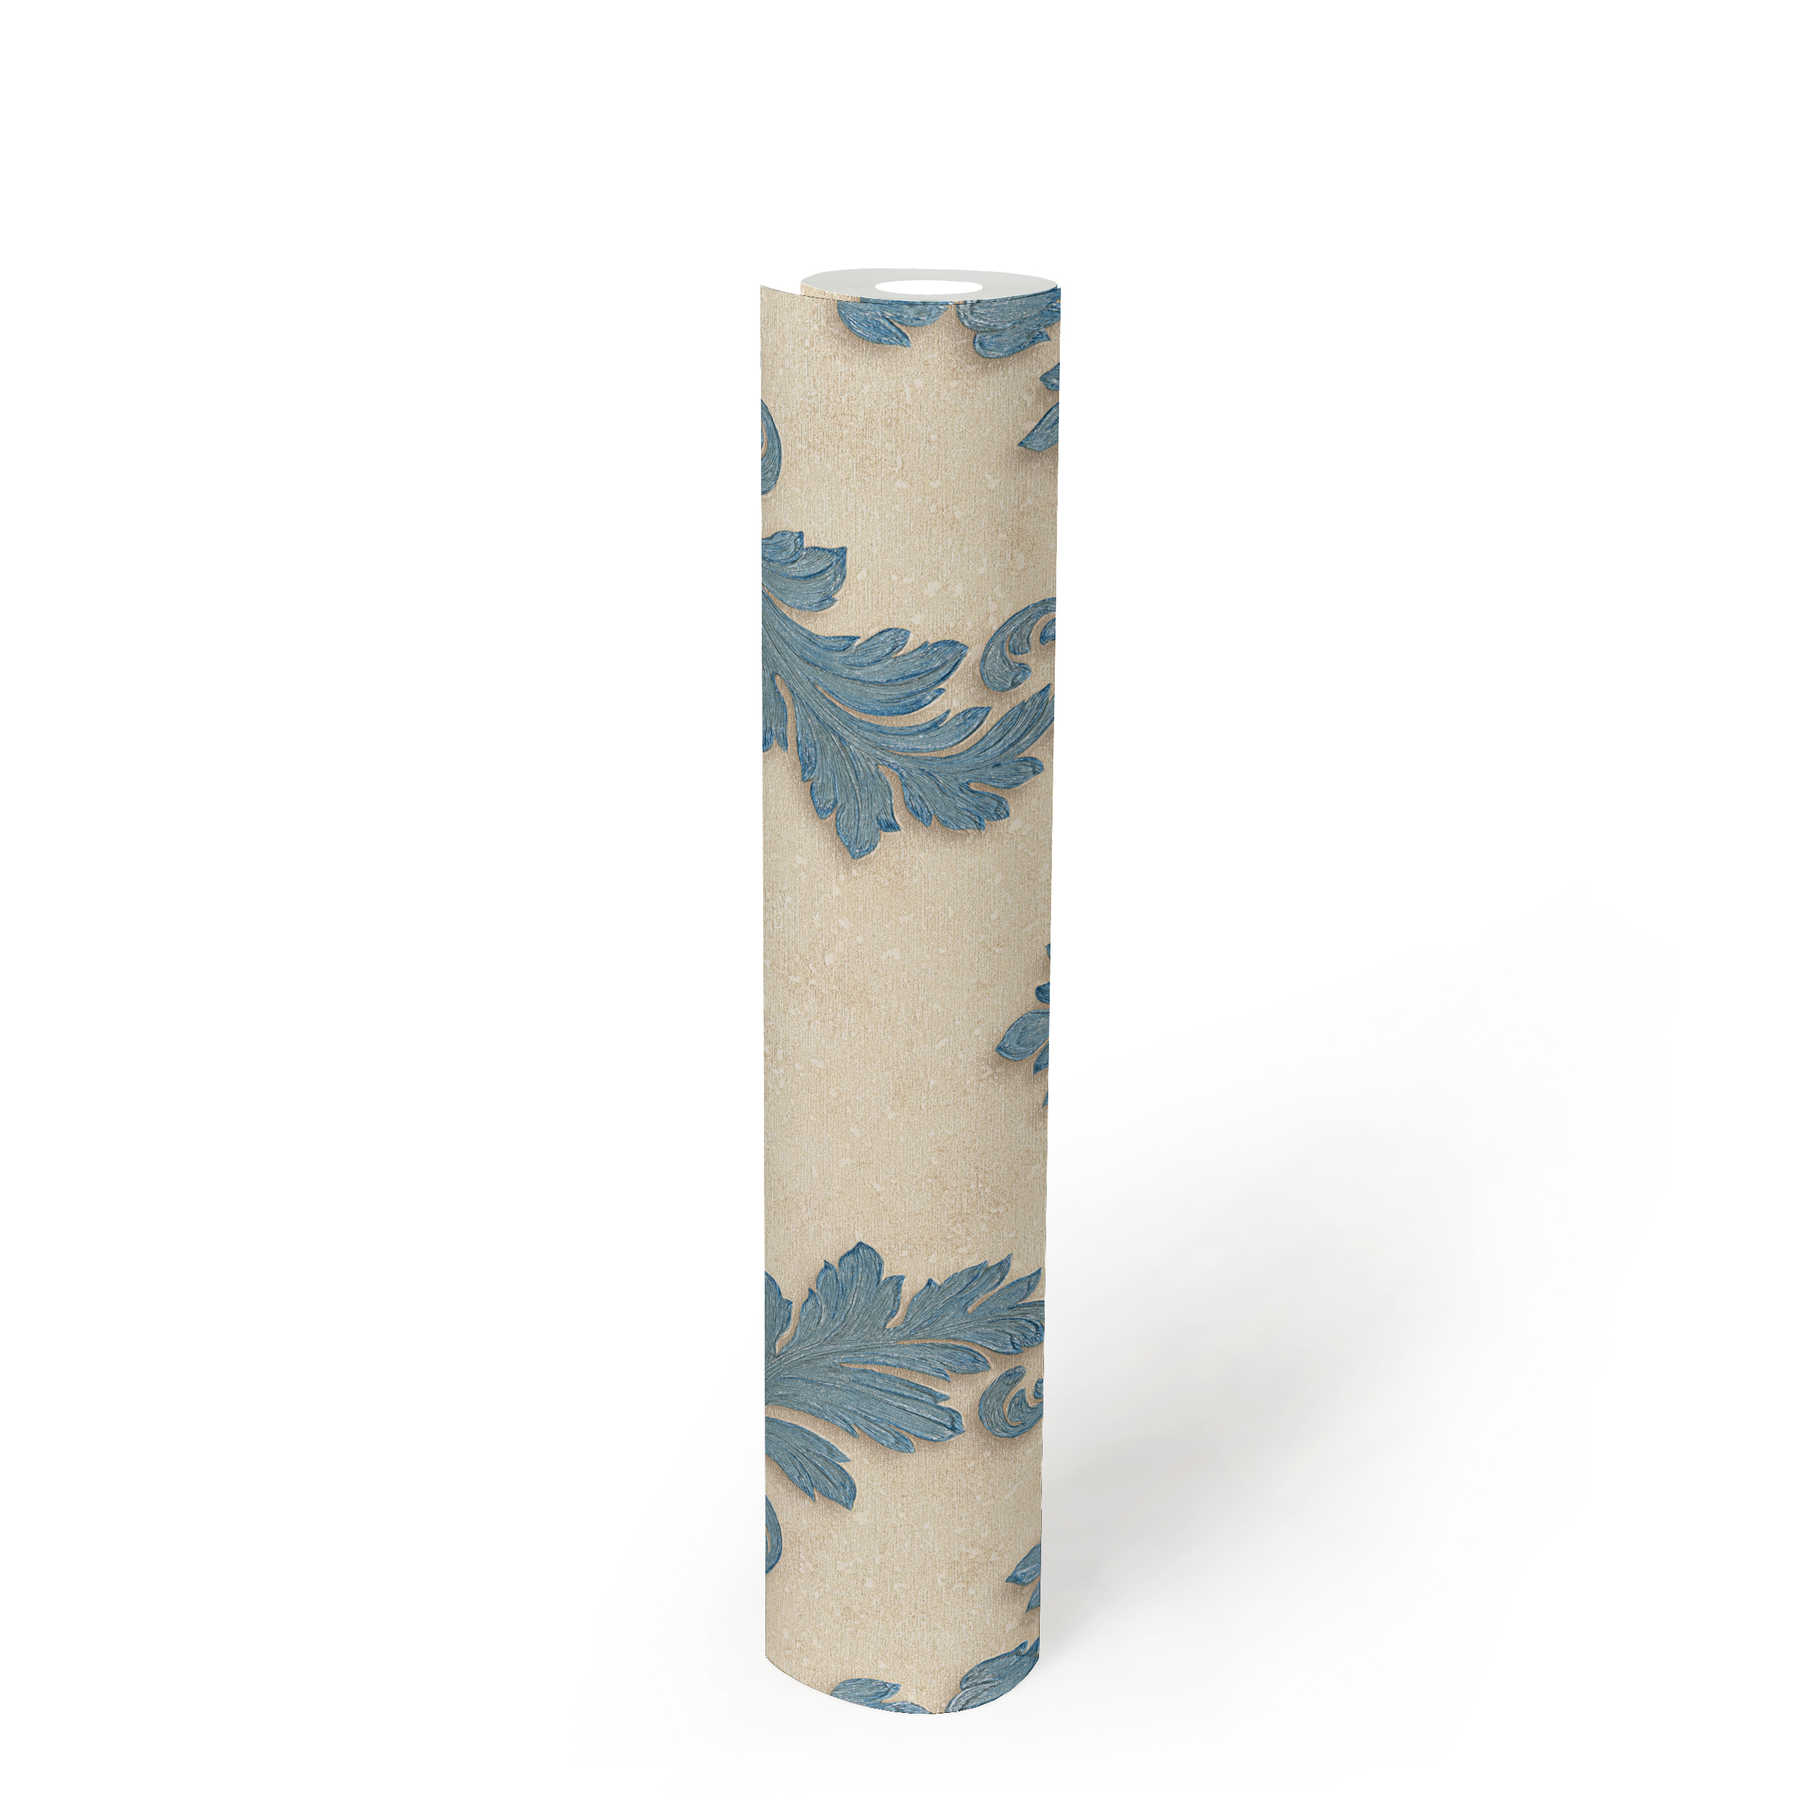             Papier peint de créateur ornements floraux & effet métallique - bleu, or, crème
        